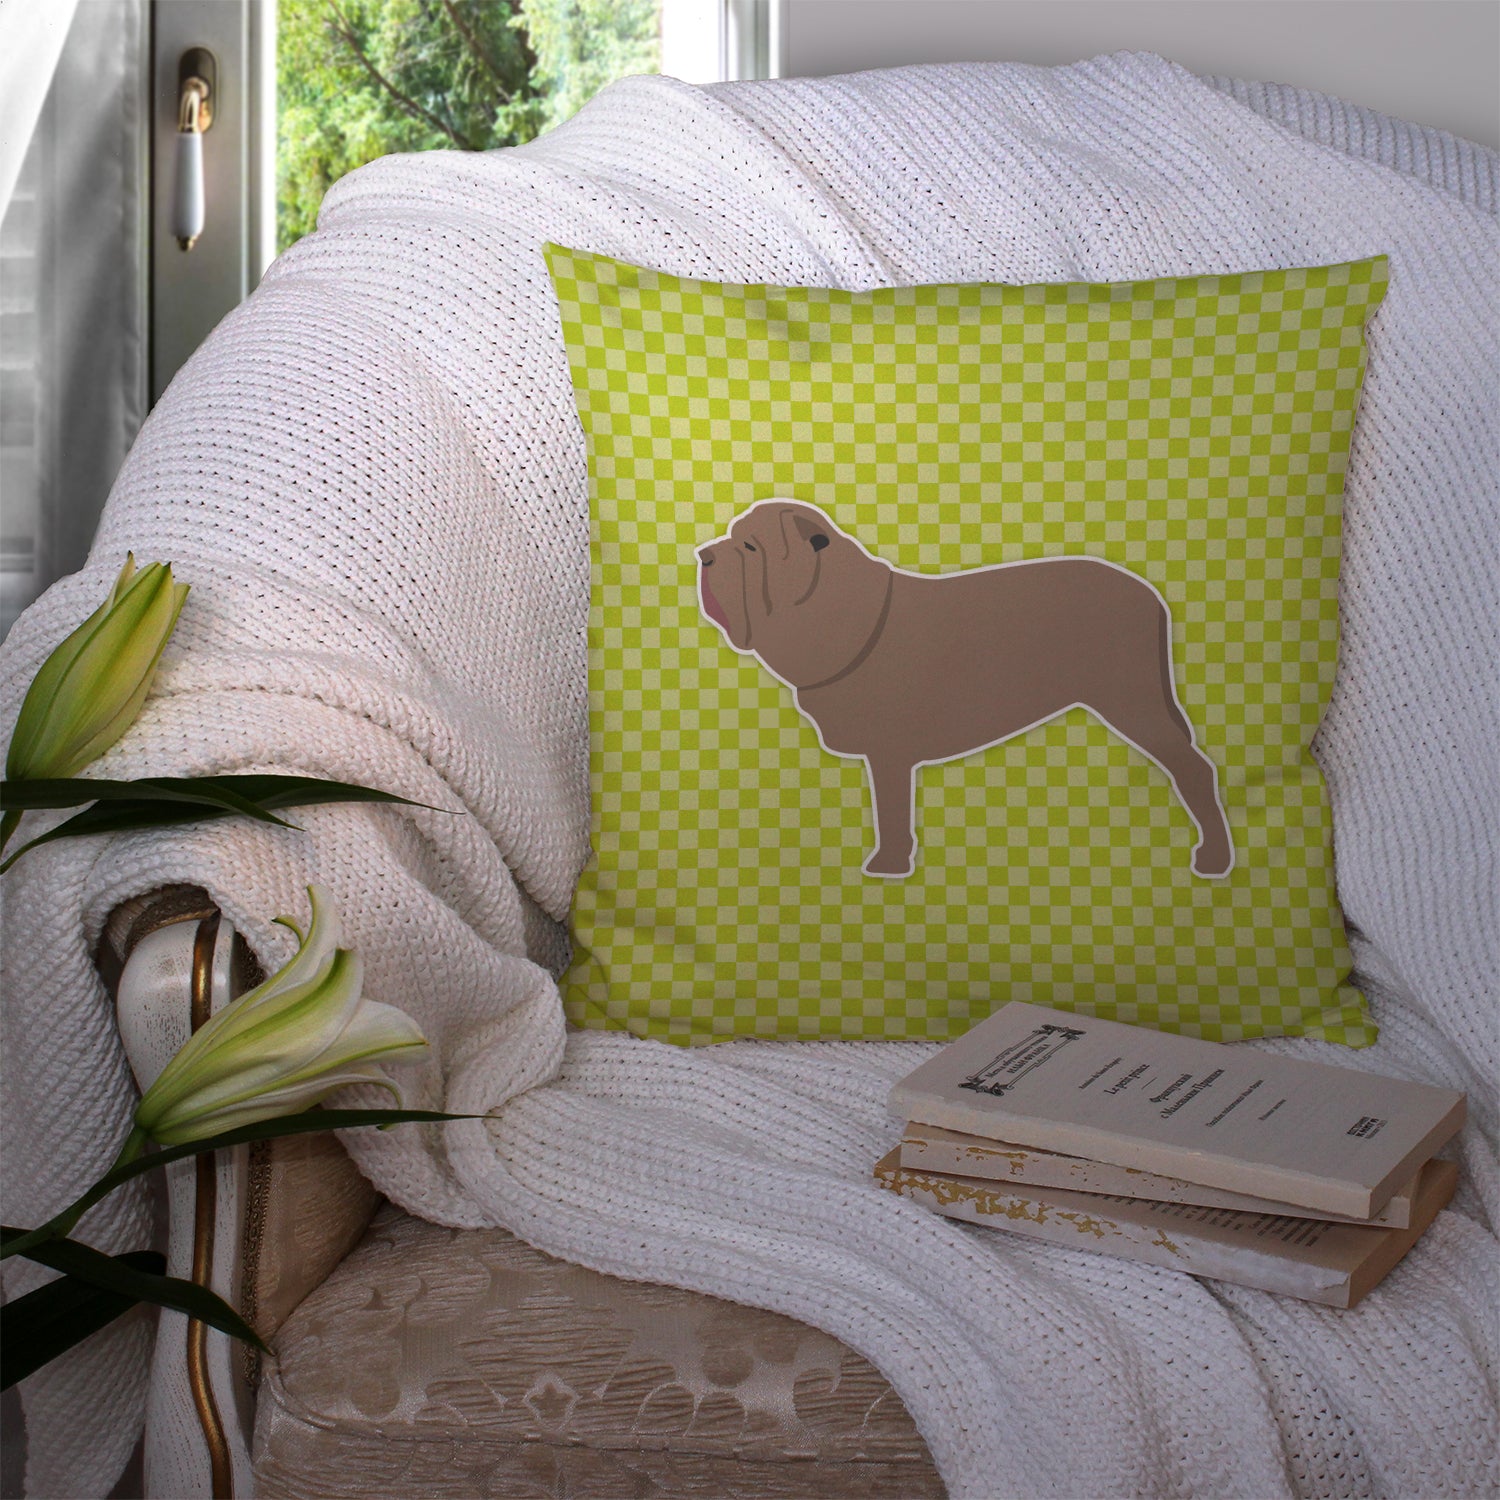 Neapolitan Mastiff Checkerboard Green Fabric Decorative Pillow BB3865PW1414 - the-store.com